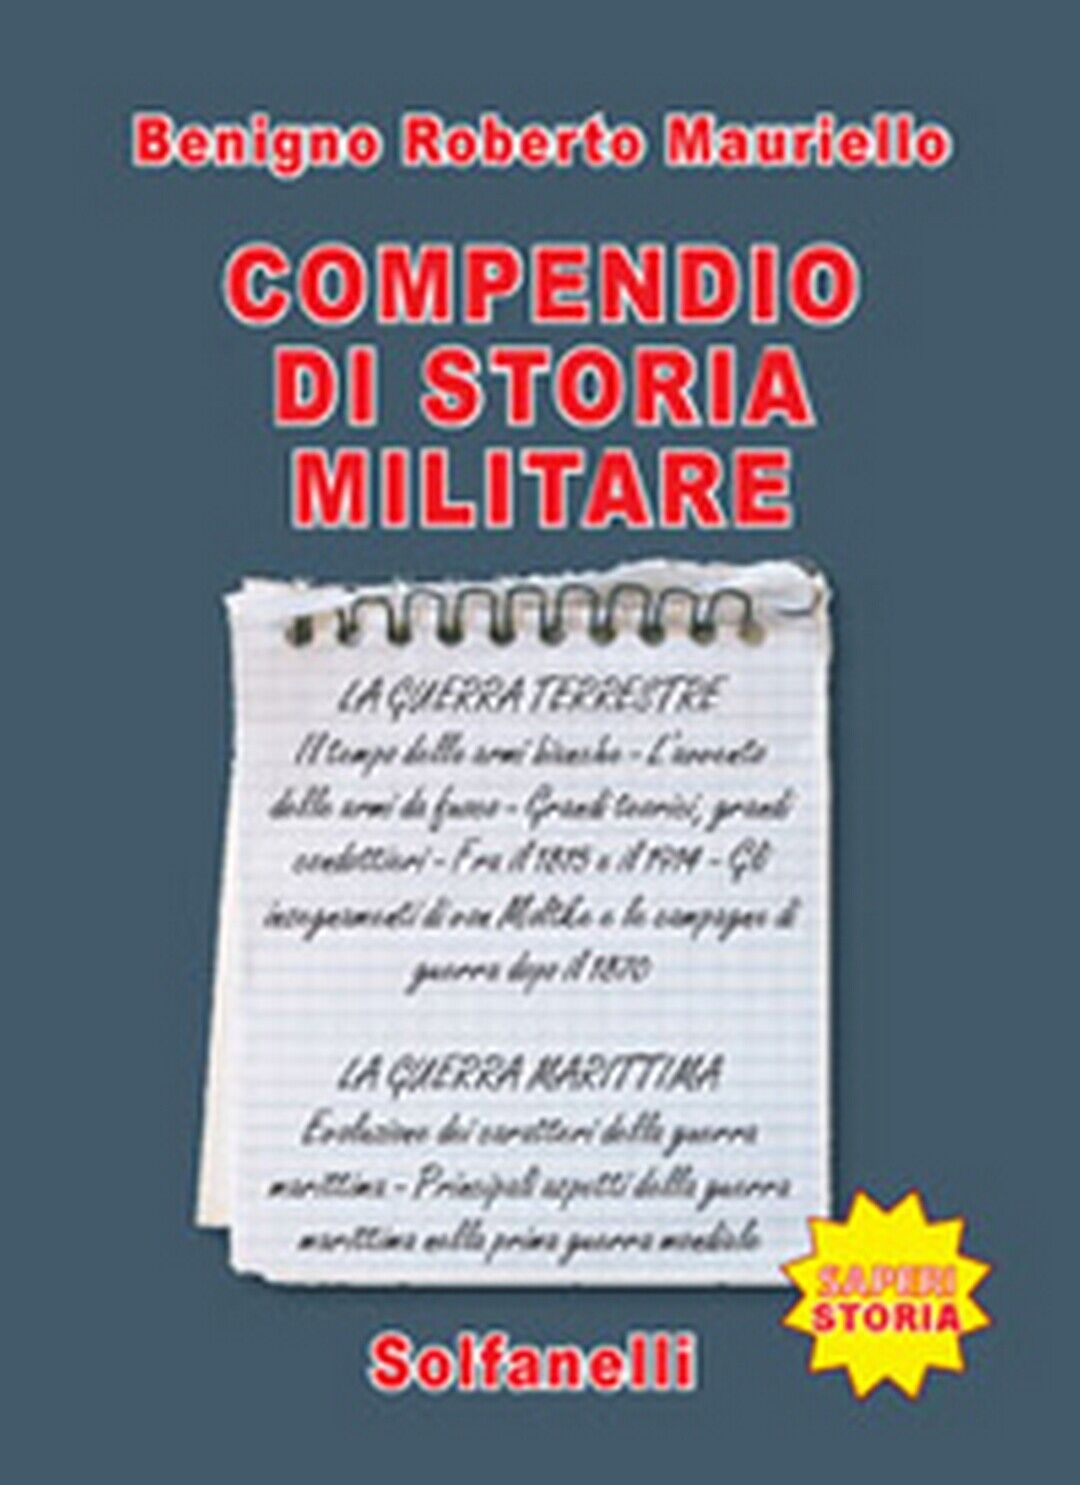 COMPENDIO DI STORIA MILITARE  di Benigno Roberto Mauriello,  Solfanelli Edizioni